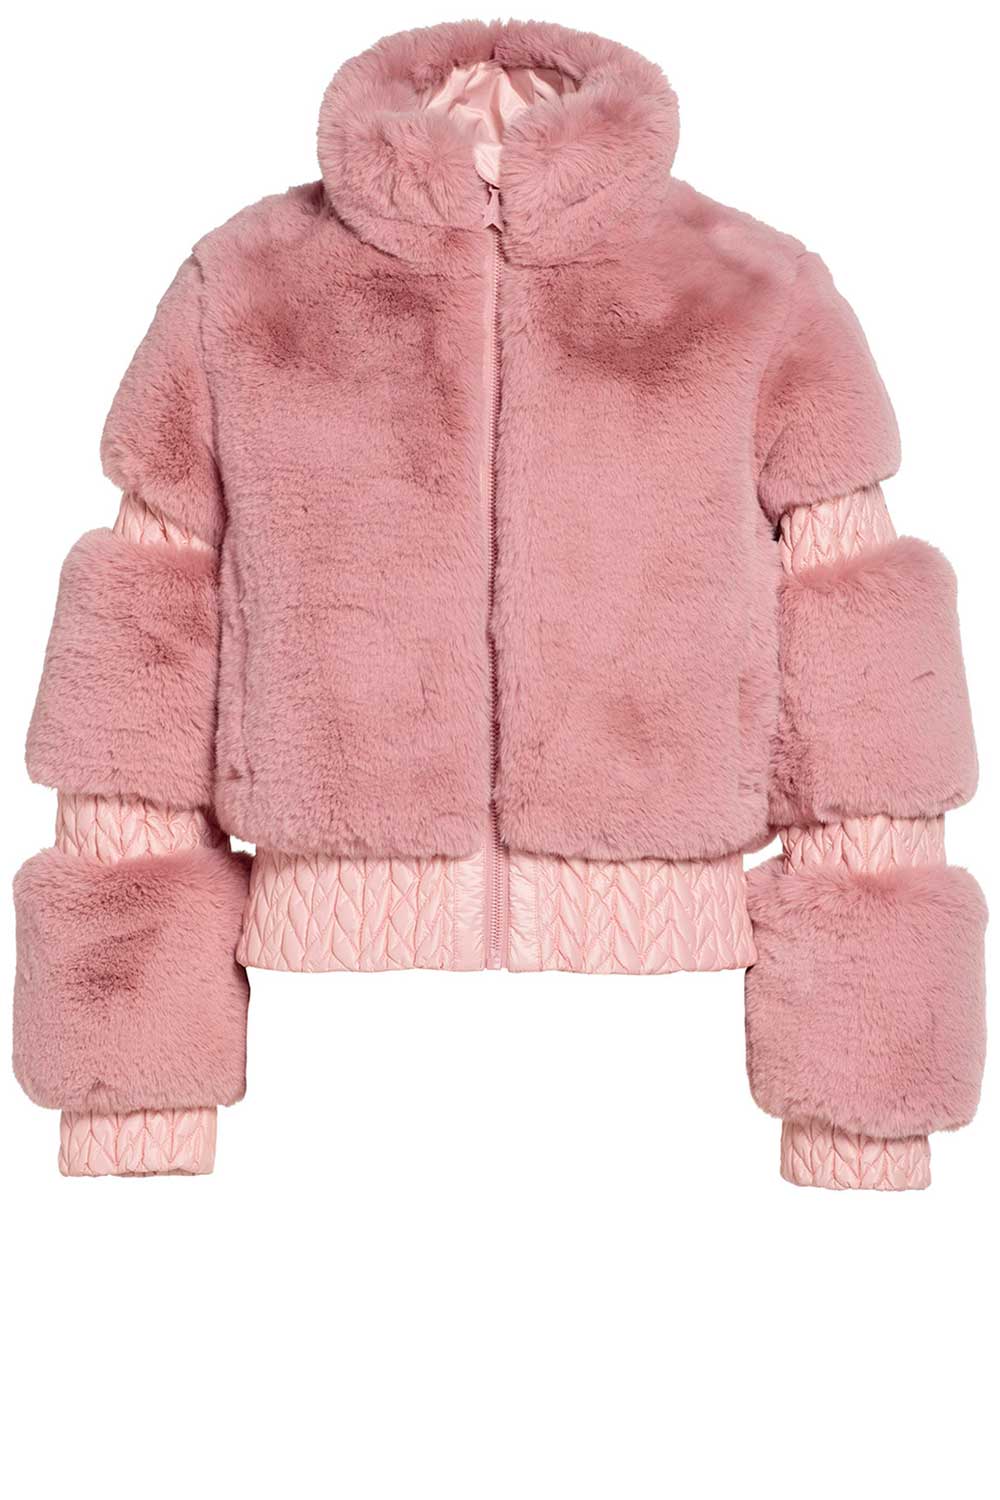 Goldbergh Teddy ski-jas Furry roze